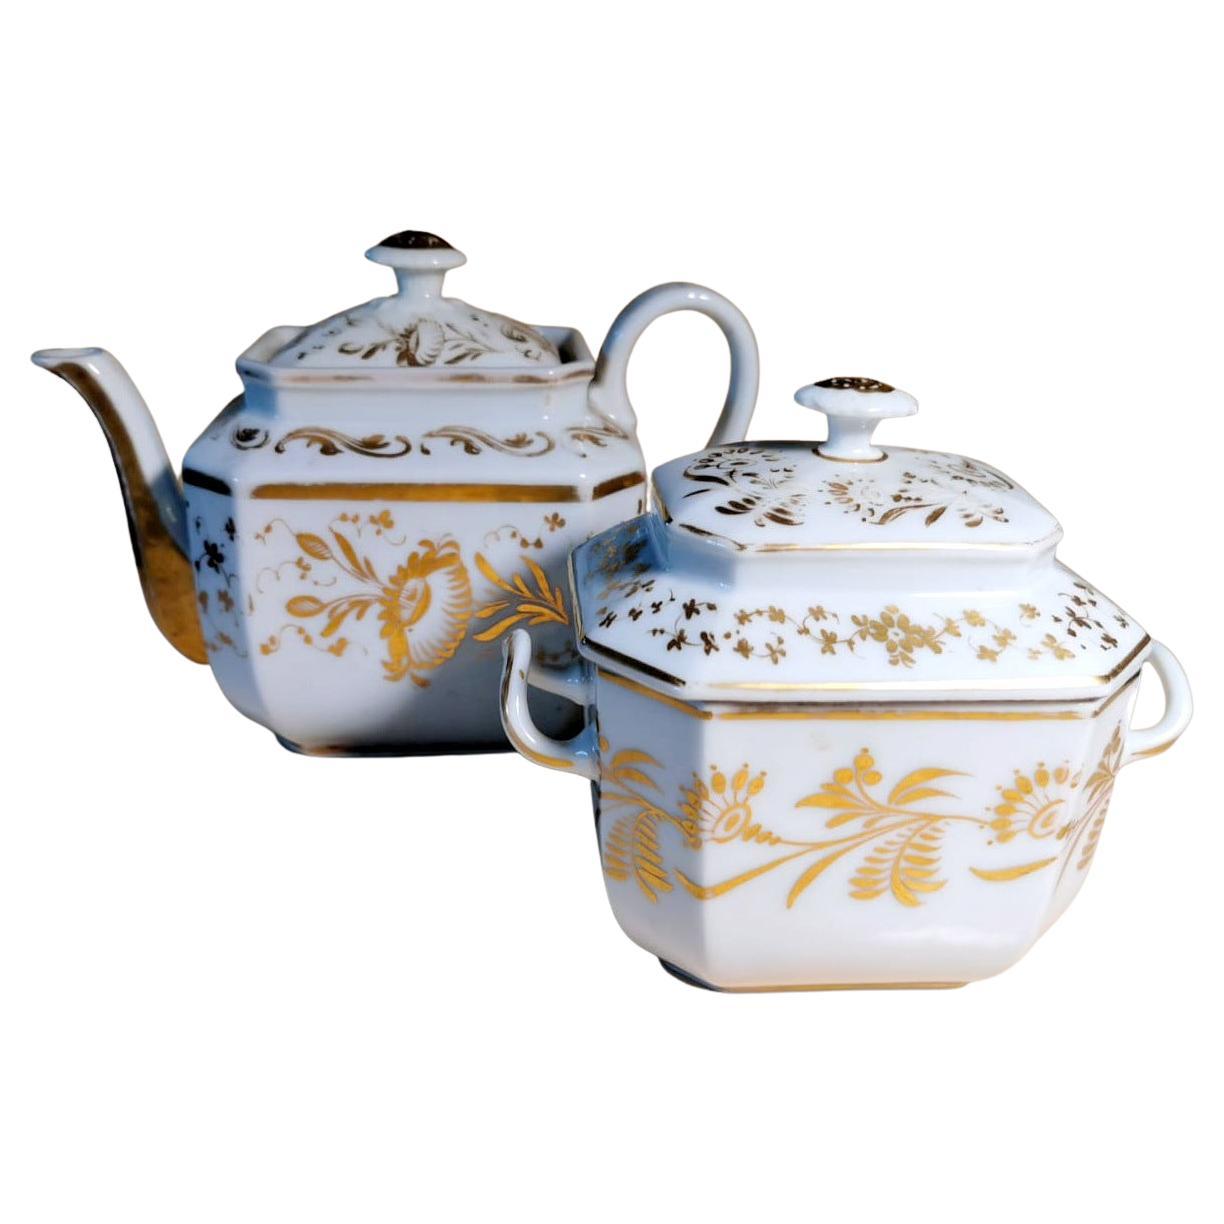 Napoleon III Porcelain De Paris Teapot and Sugar Bowl with Pure Gold Decorations For Sale